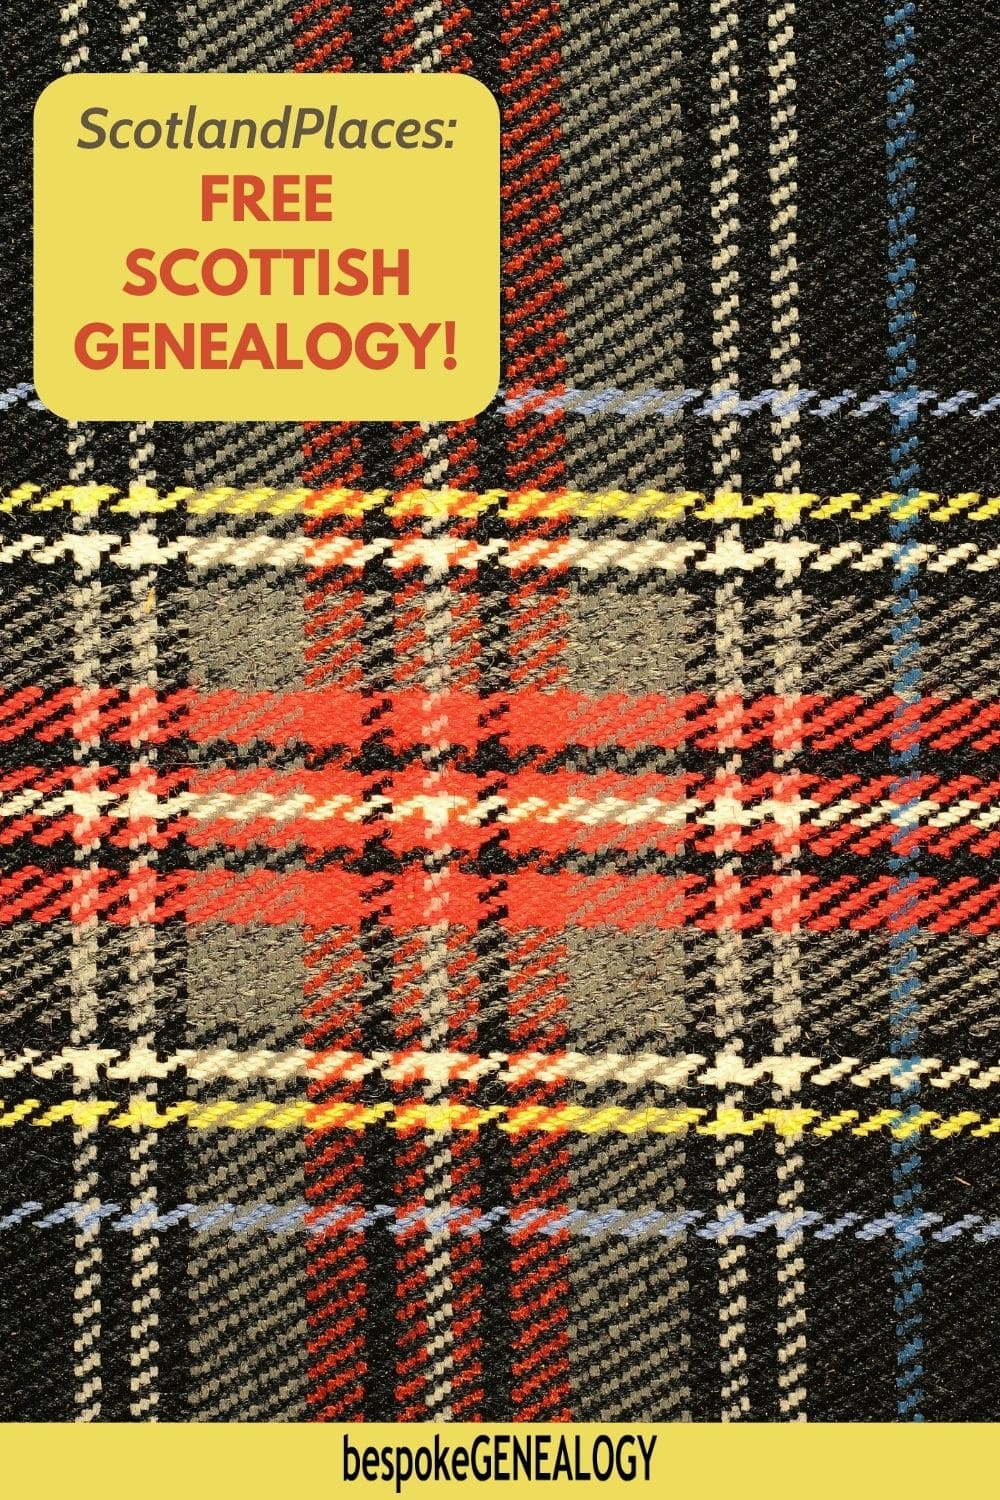 ScotlandsPlaces: Free Scottish genealogy. Photo of some Scottish tartan fabric